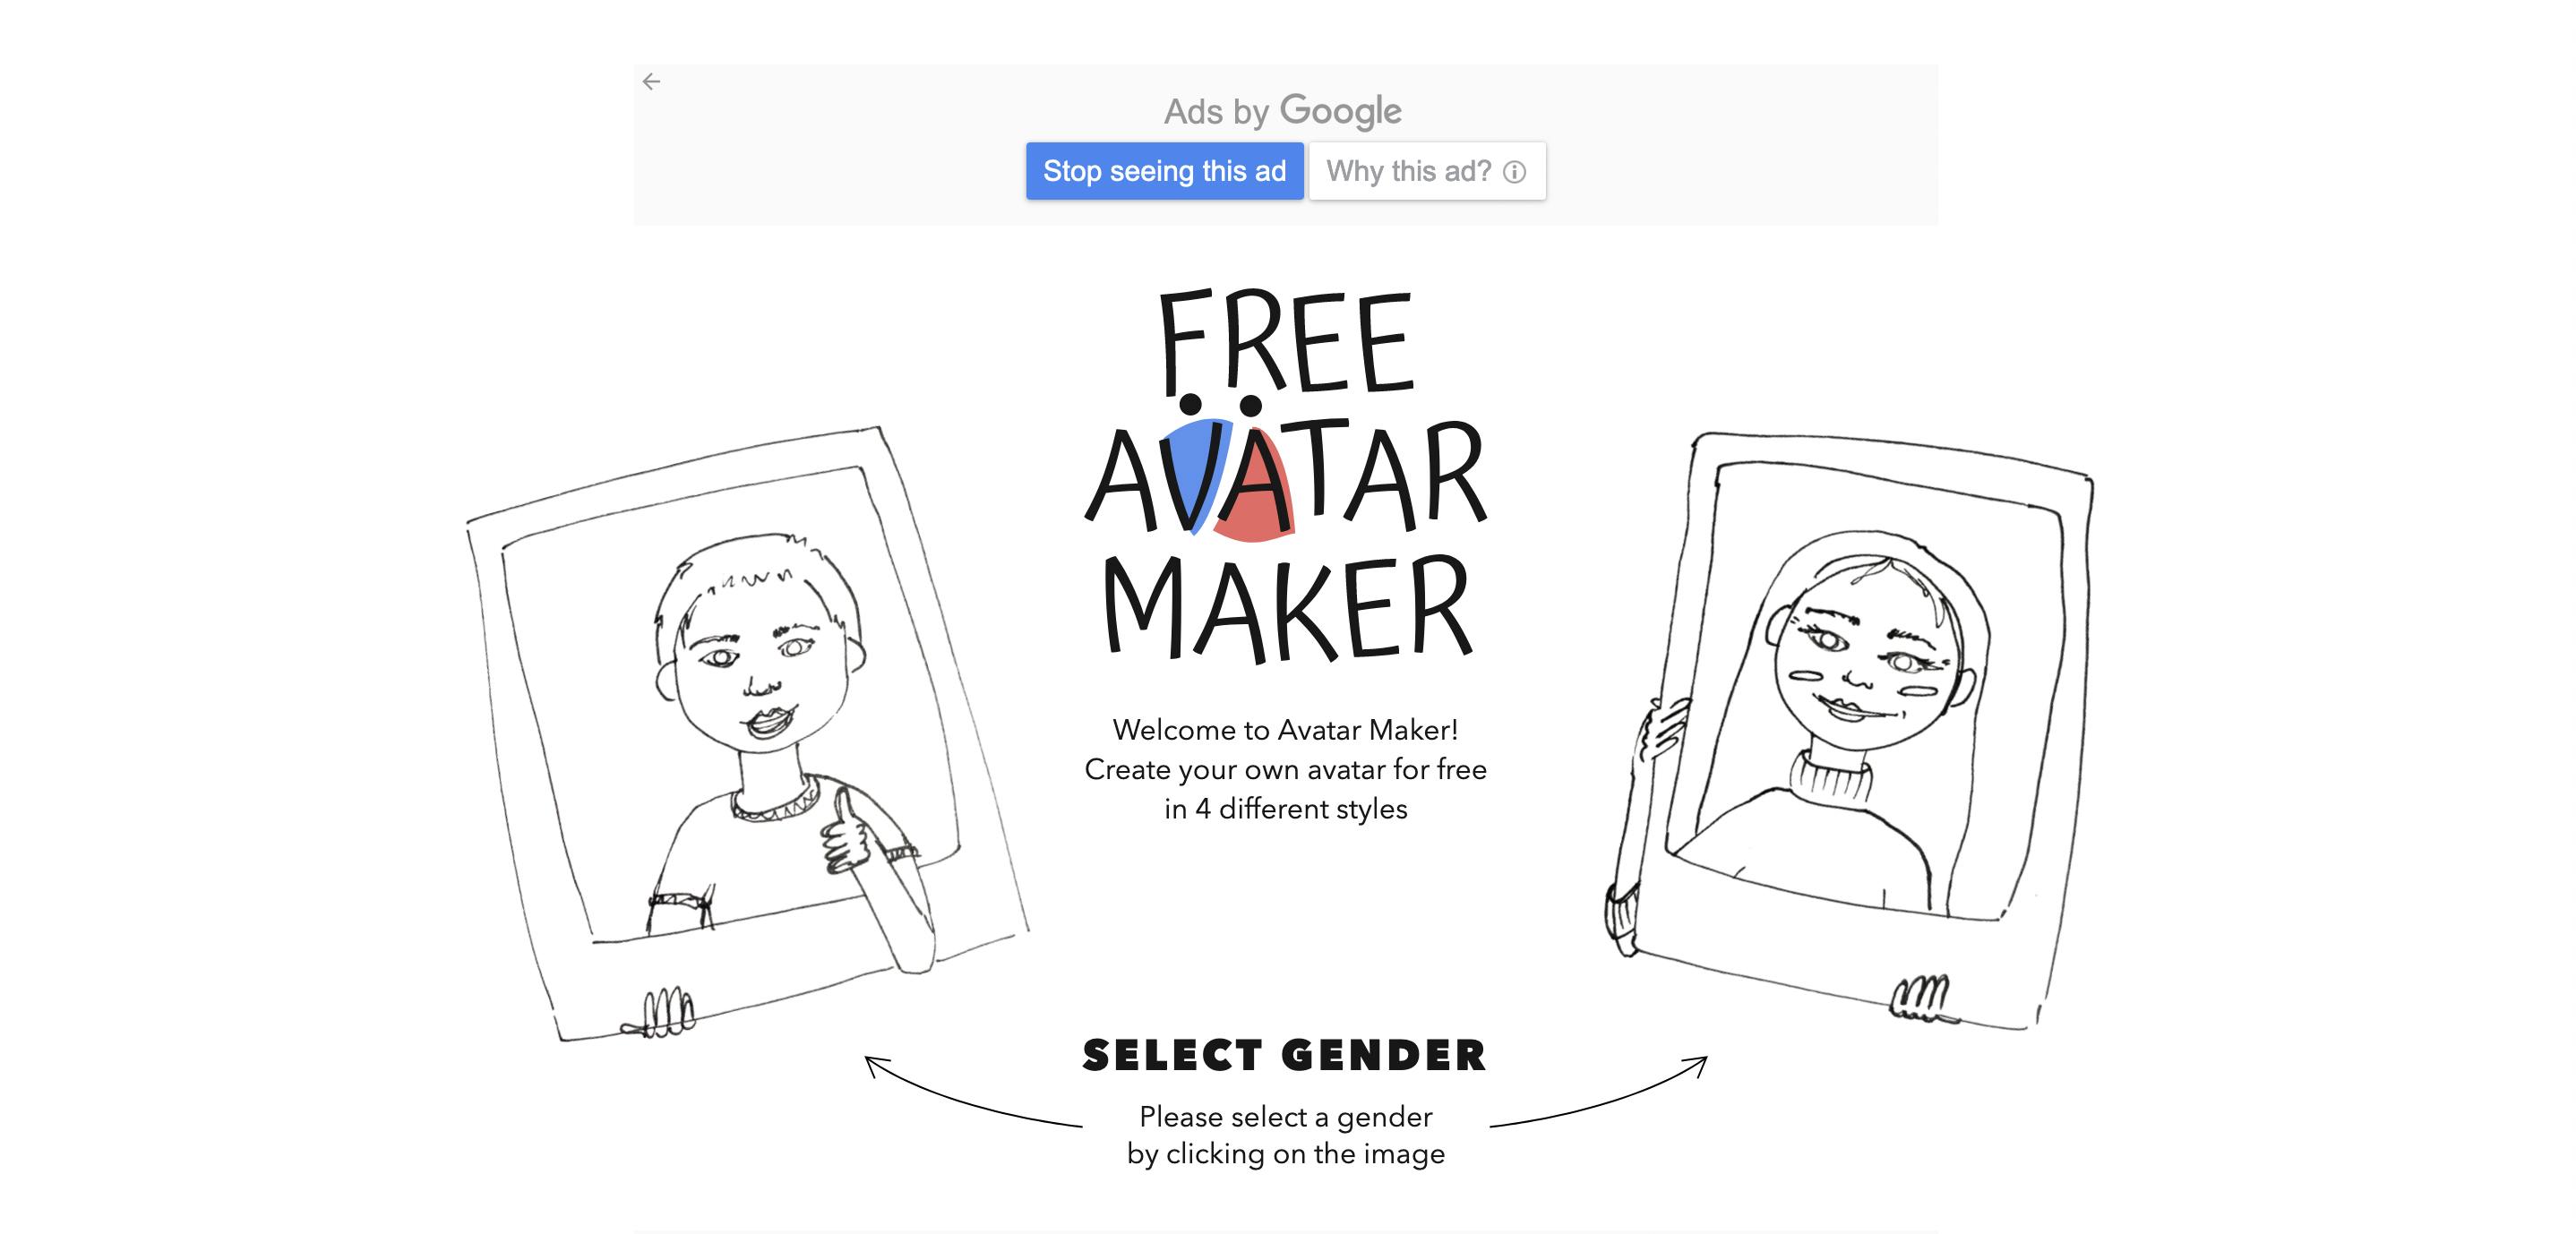 AvatarGen - Avatar Maker - Apps on Google Play